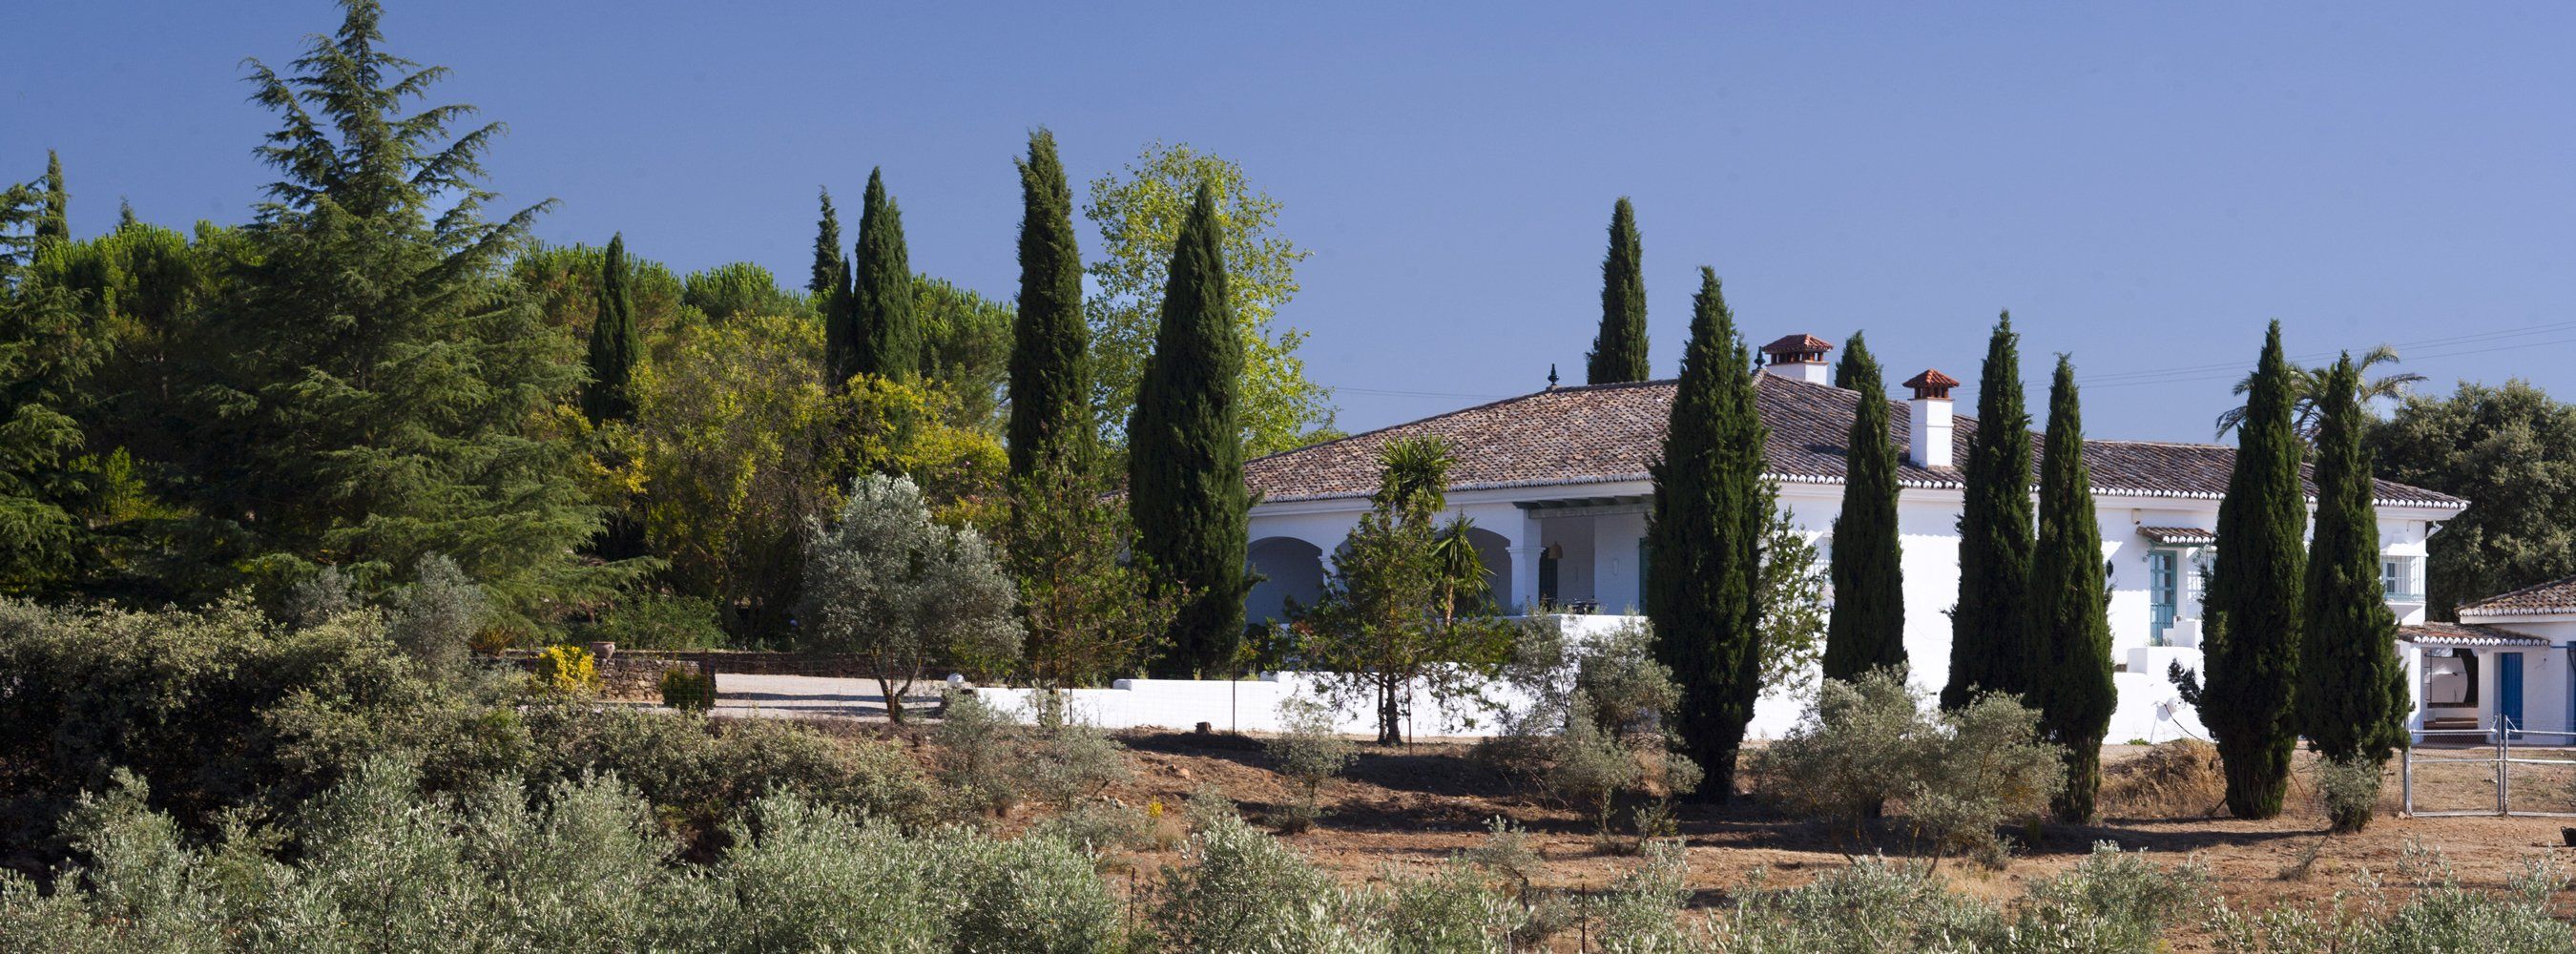 villa andalucia